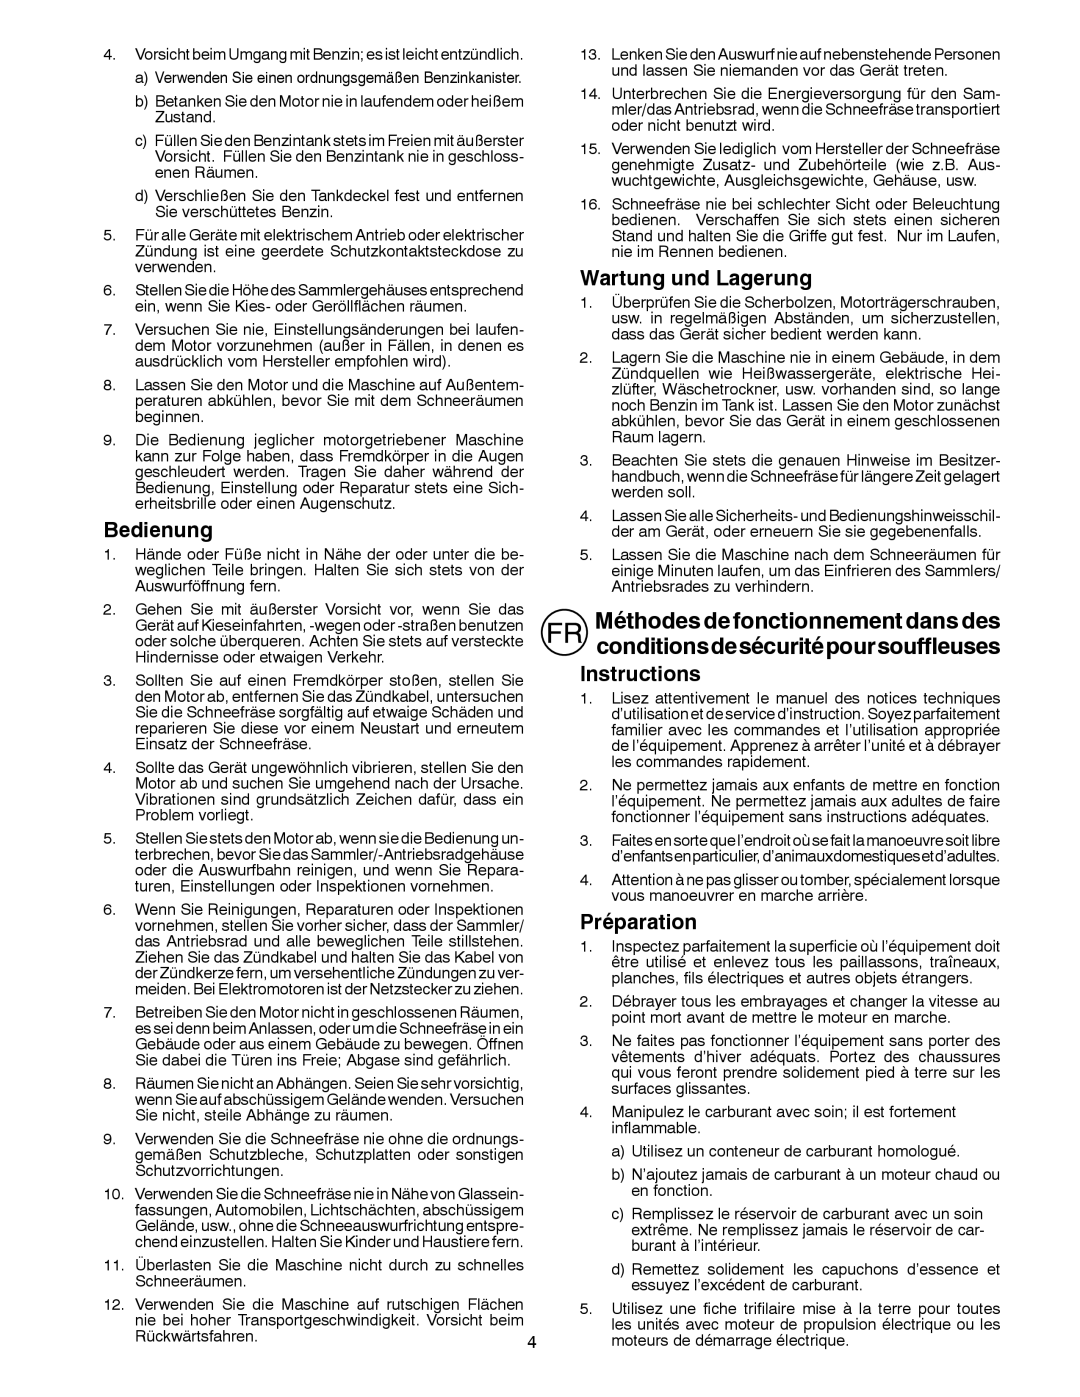 Husqvarna ST 276EP instruction manual Bedienung, Wartung und Lagerung, Instructions, Préparation 